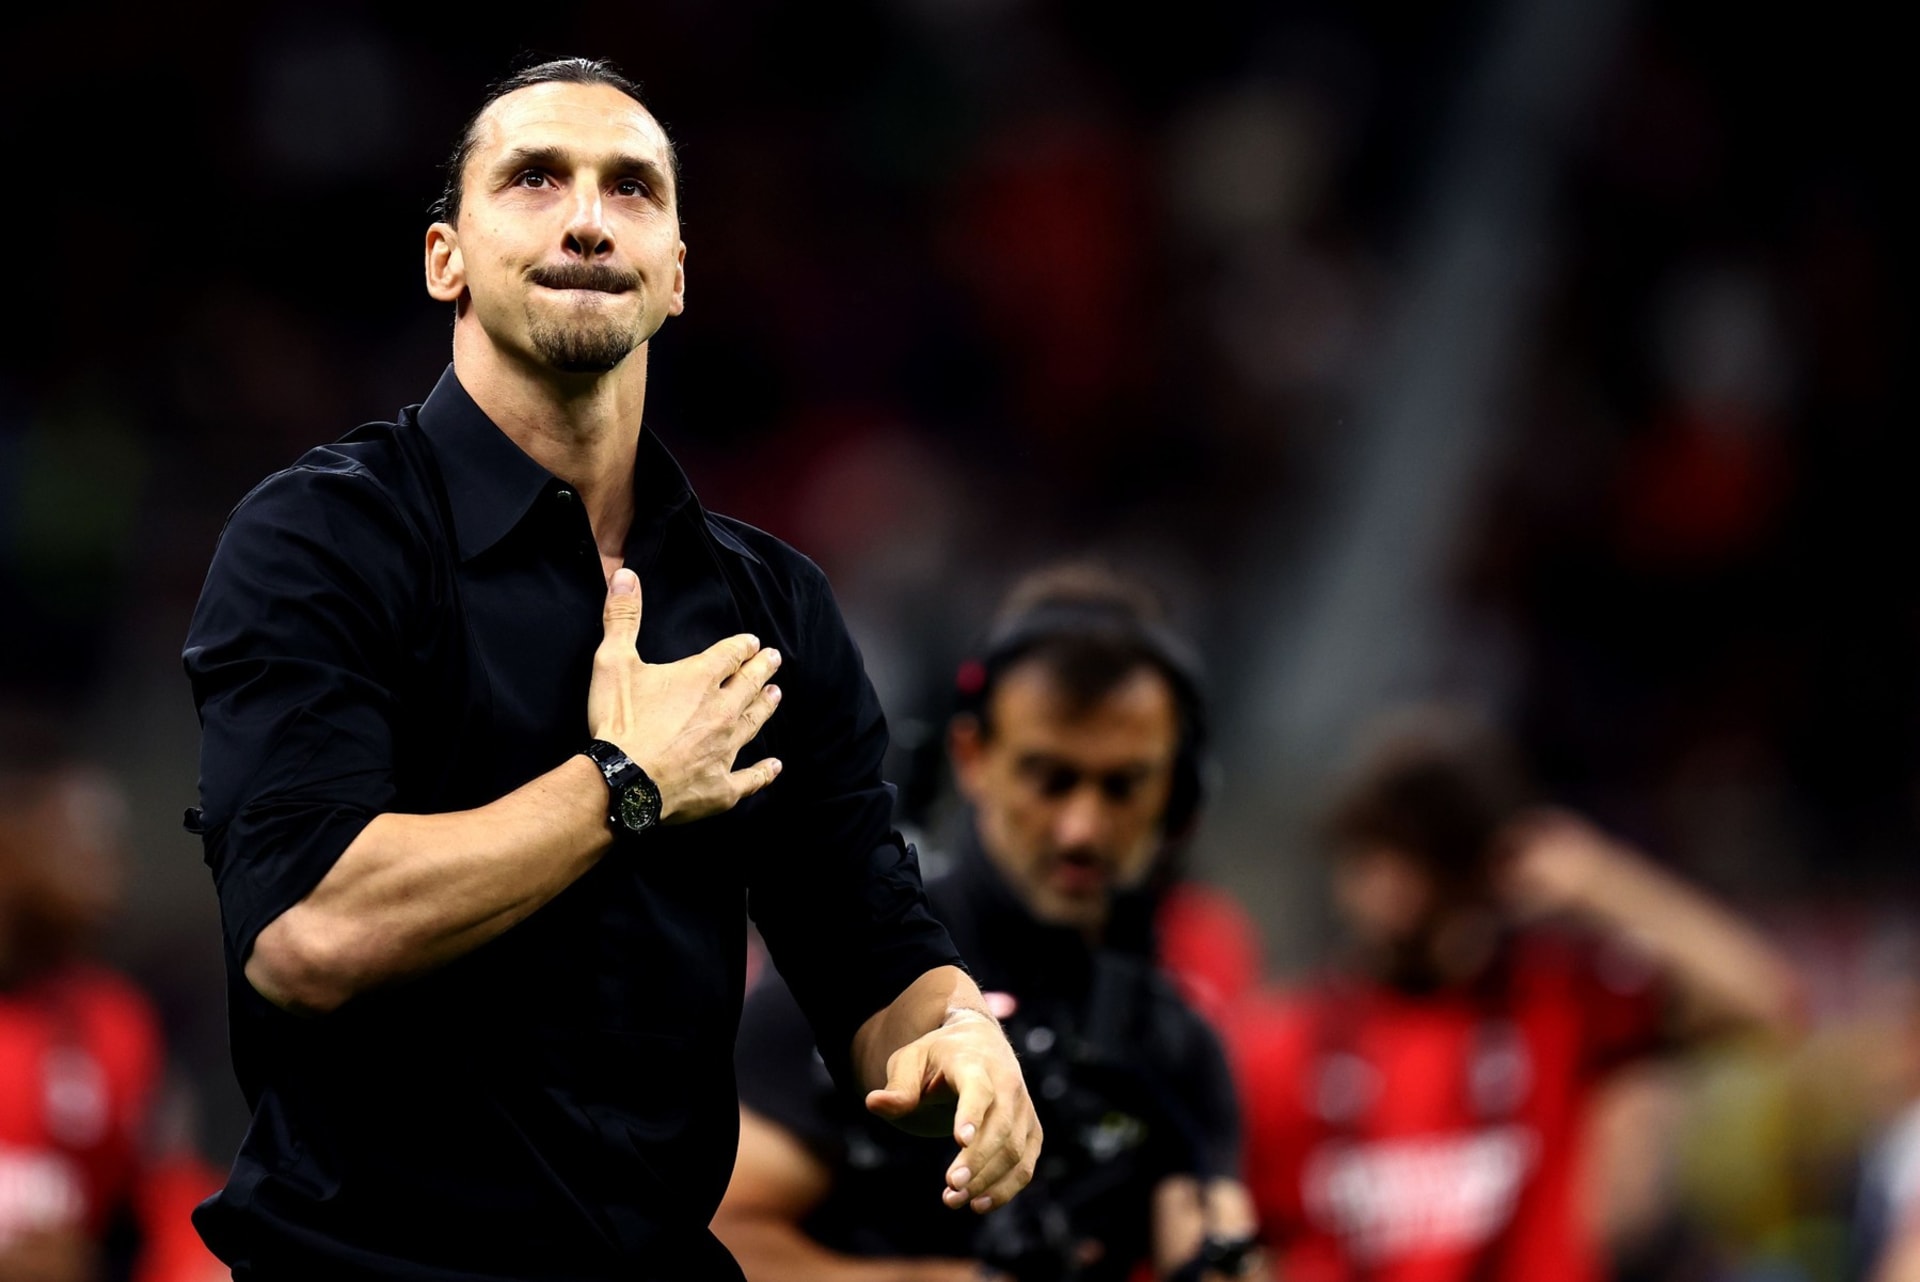 První červnový víkend oznámil superstřelec Zlatan Ibrahimović konec své bohaté fotbalové kariéry.